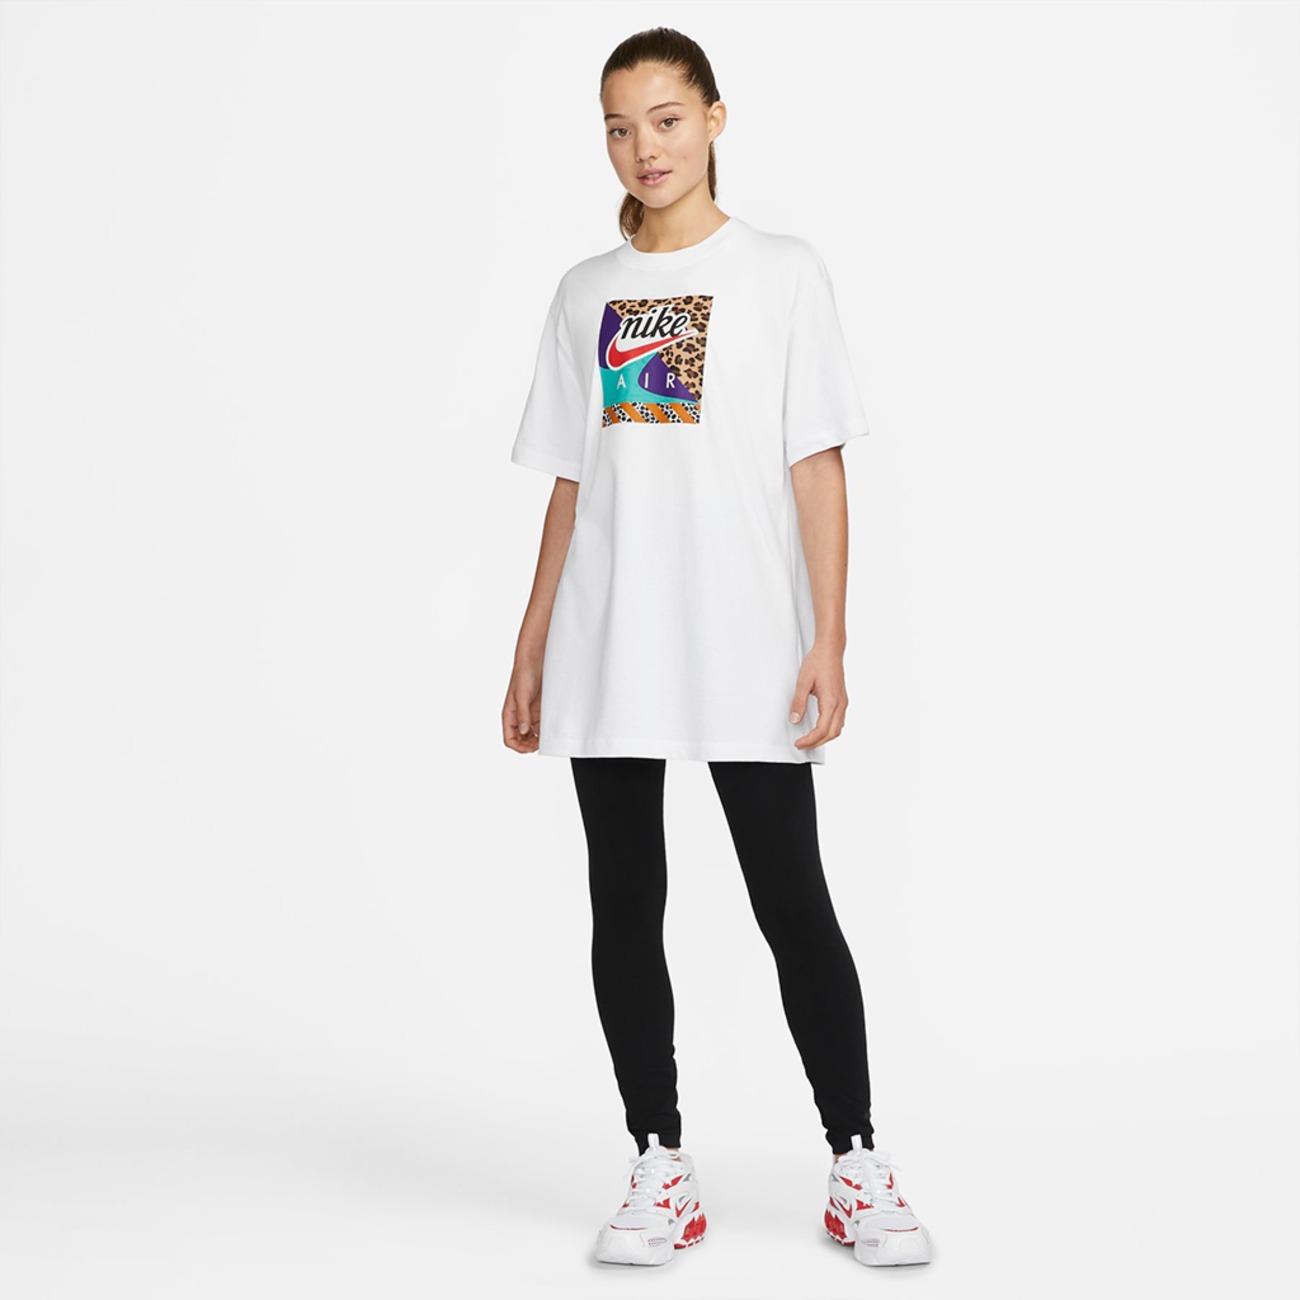 Camiseta Nike Sportswear Feminina - Foto 4